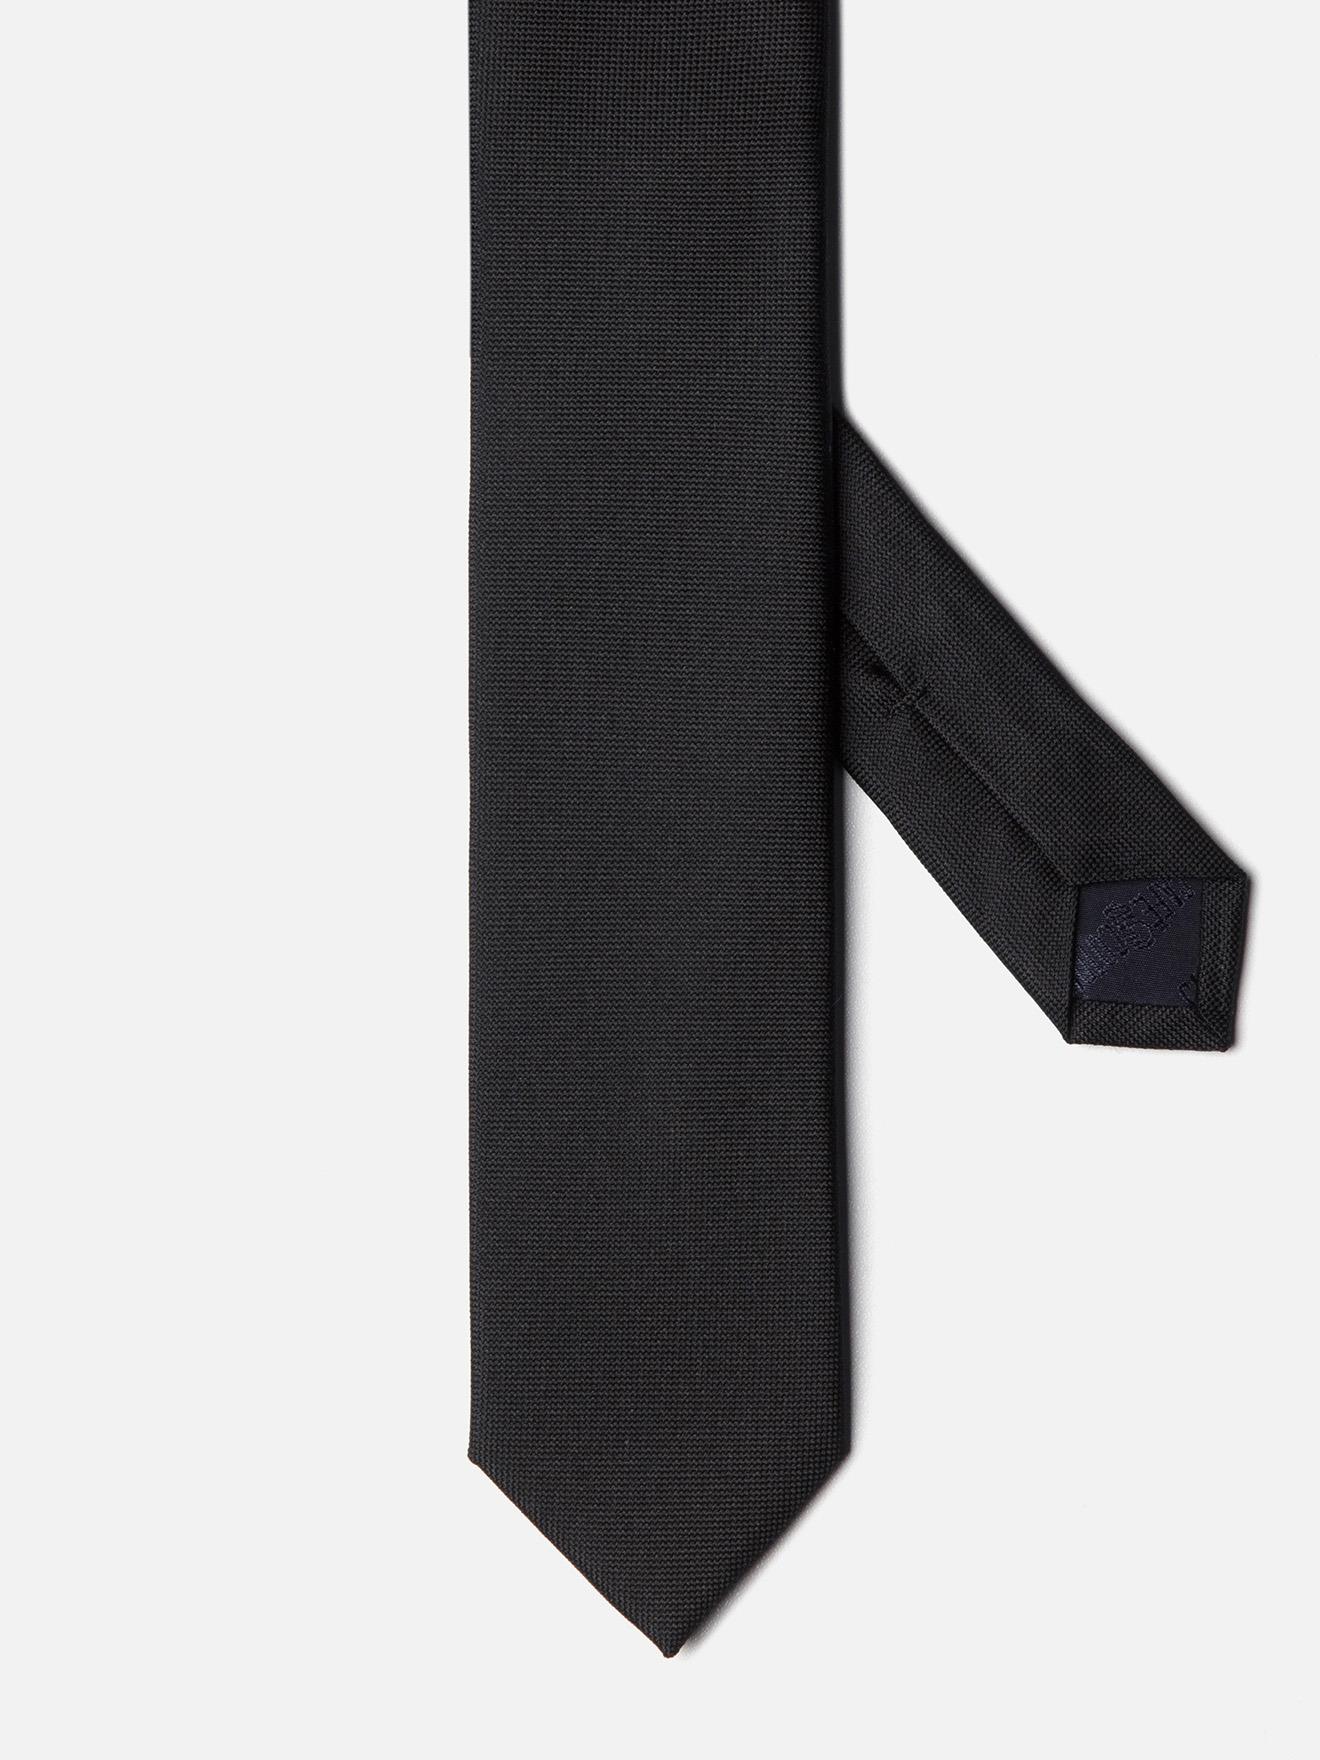 Cravate fine en soie noire